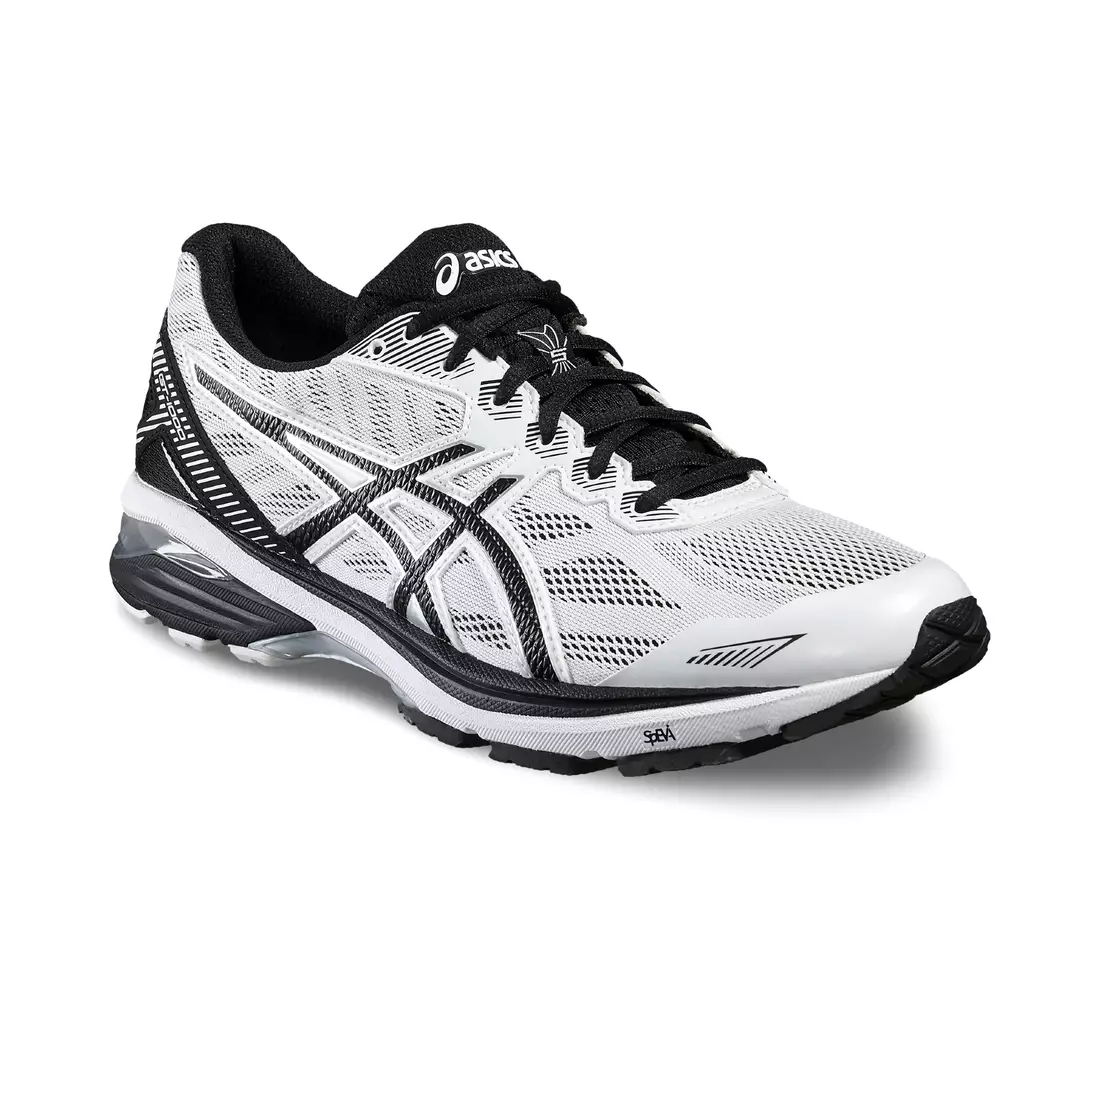 Pantofi de alergare pentru bărbați ASICS GT-1000 5 T6A3N 0190